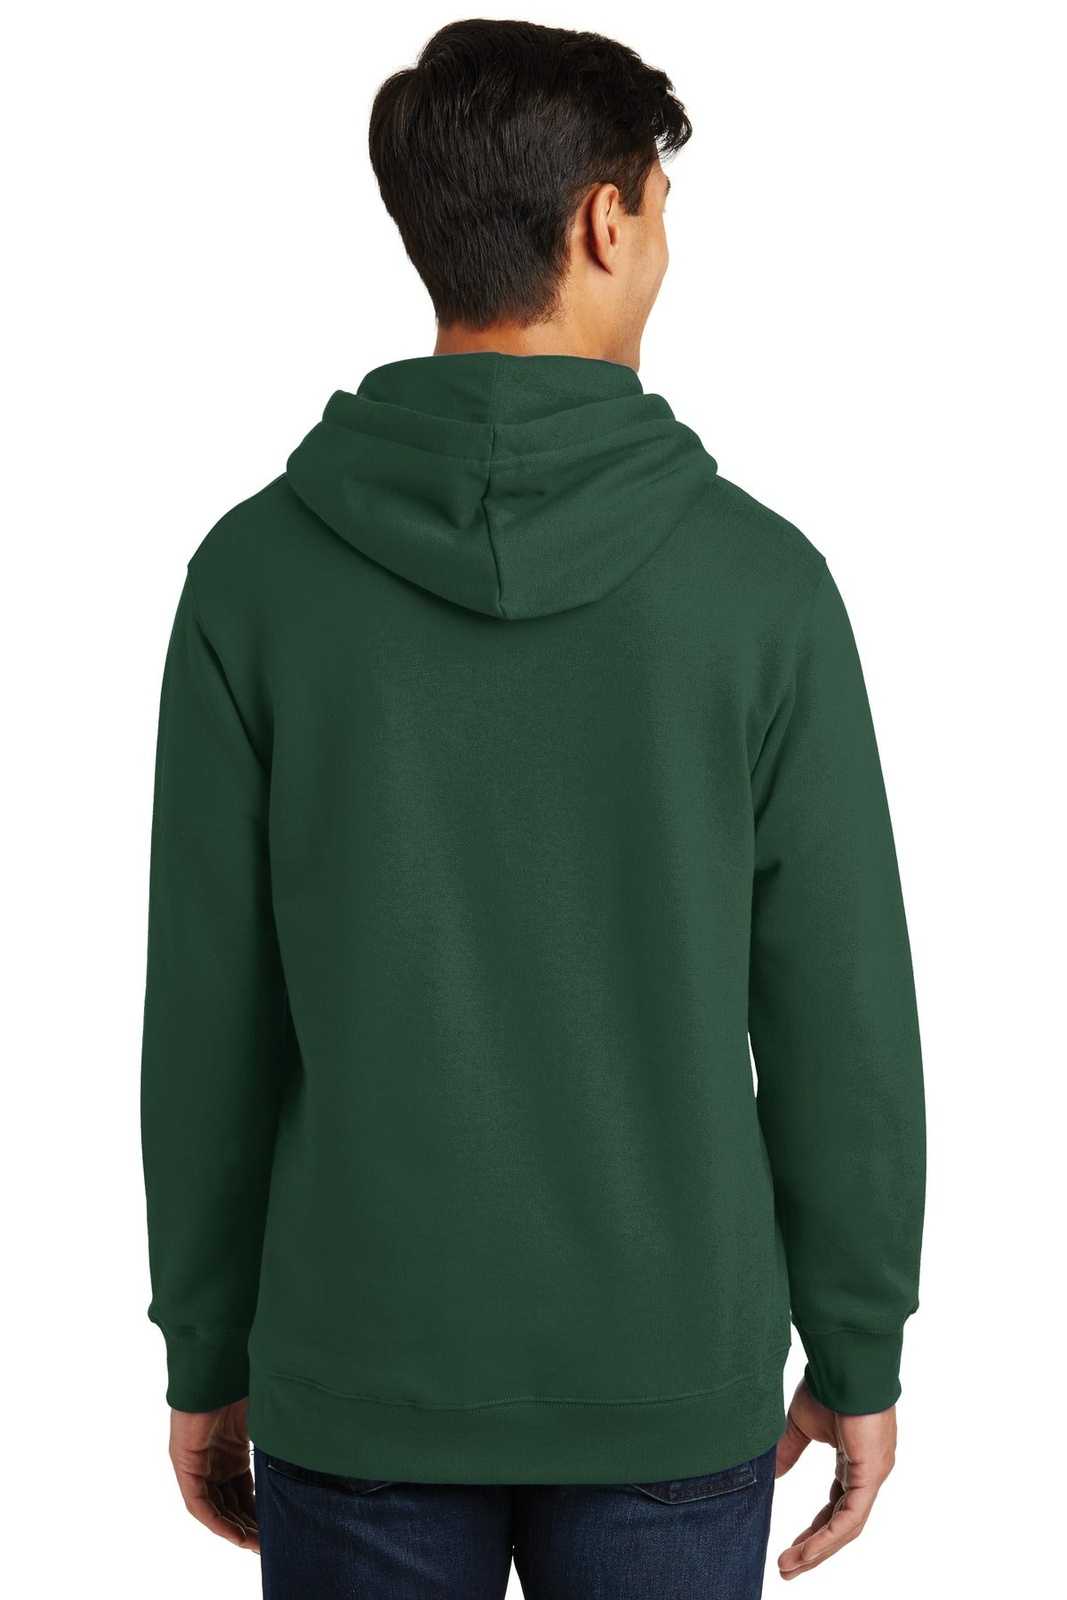 Port & Company PC850H Fan Favorite Fleece Pullover Hooded Sweatshirt - Forest Green - HIT a Double - 1